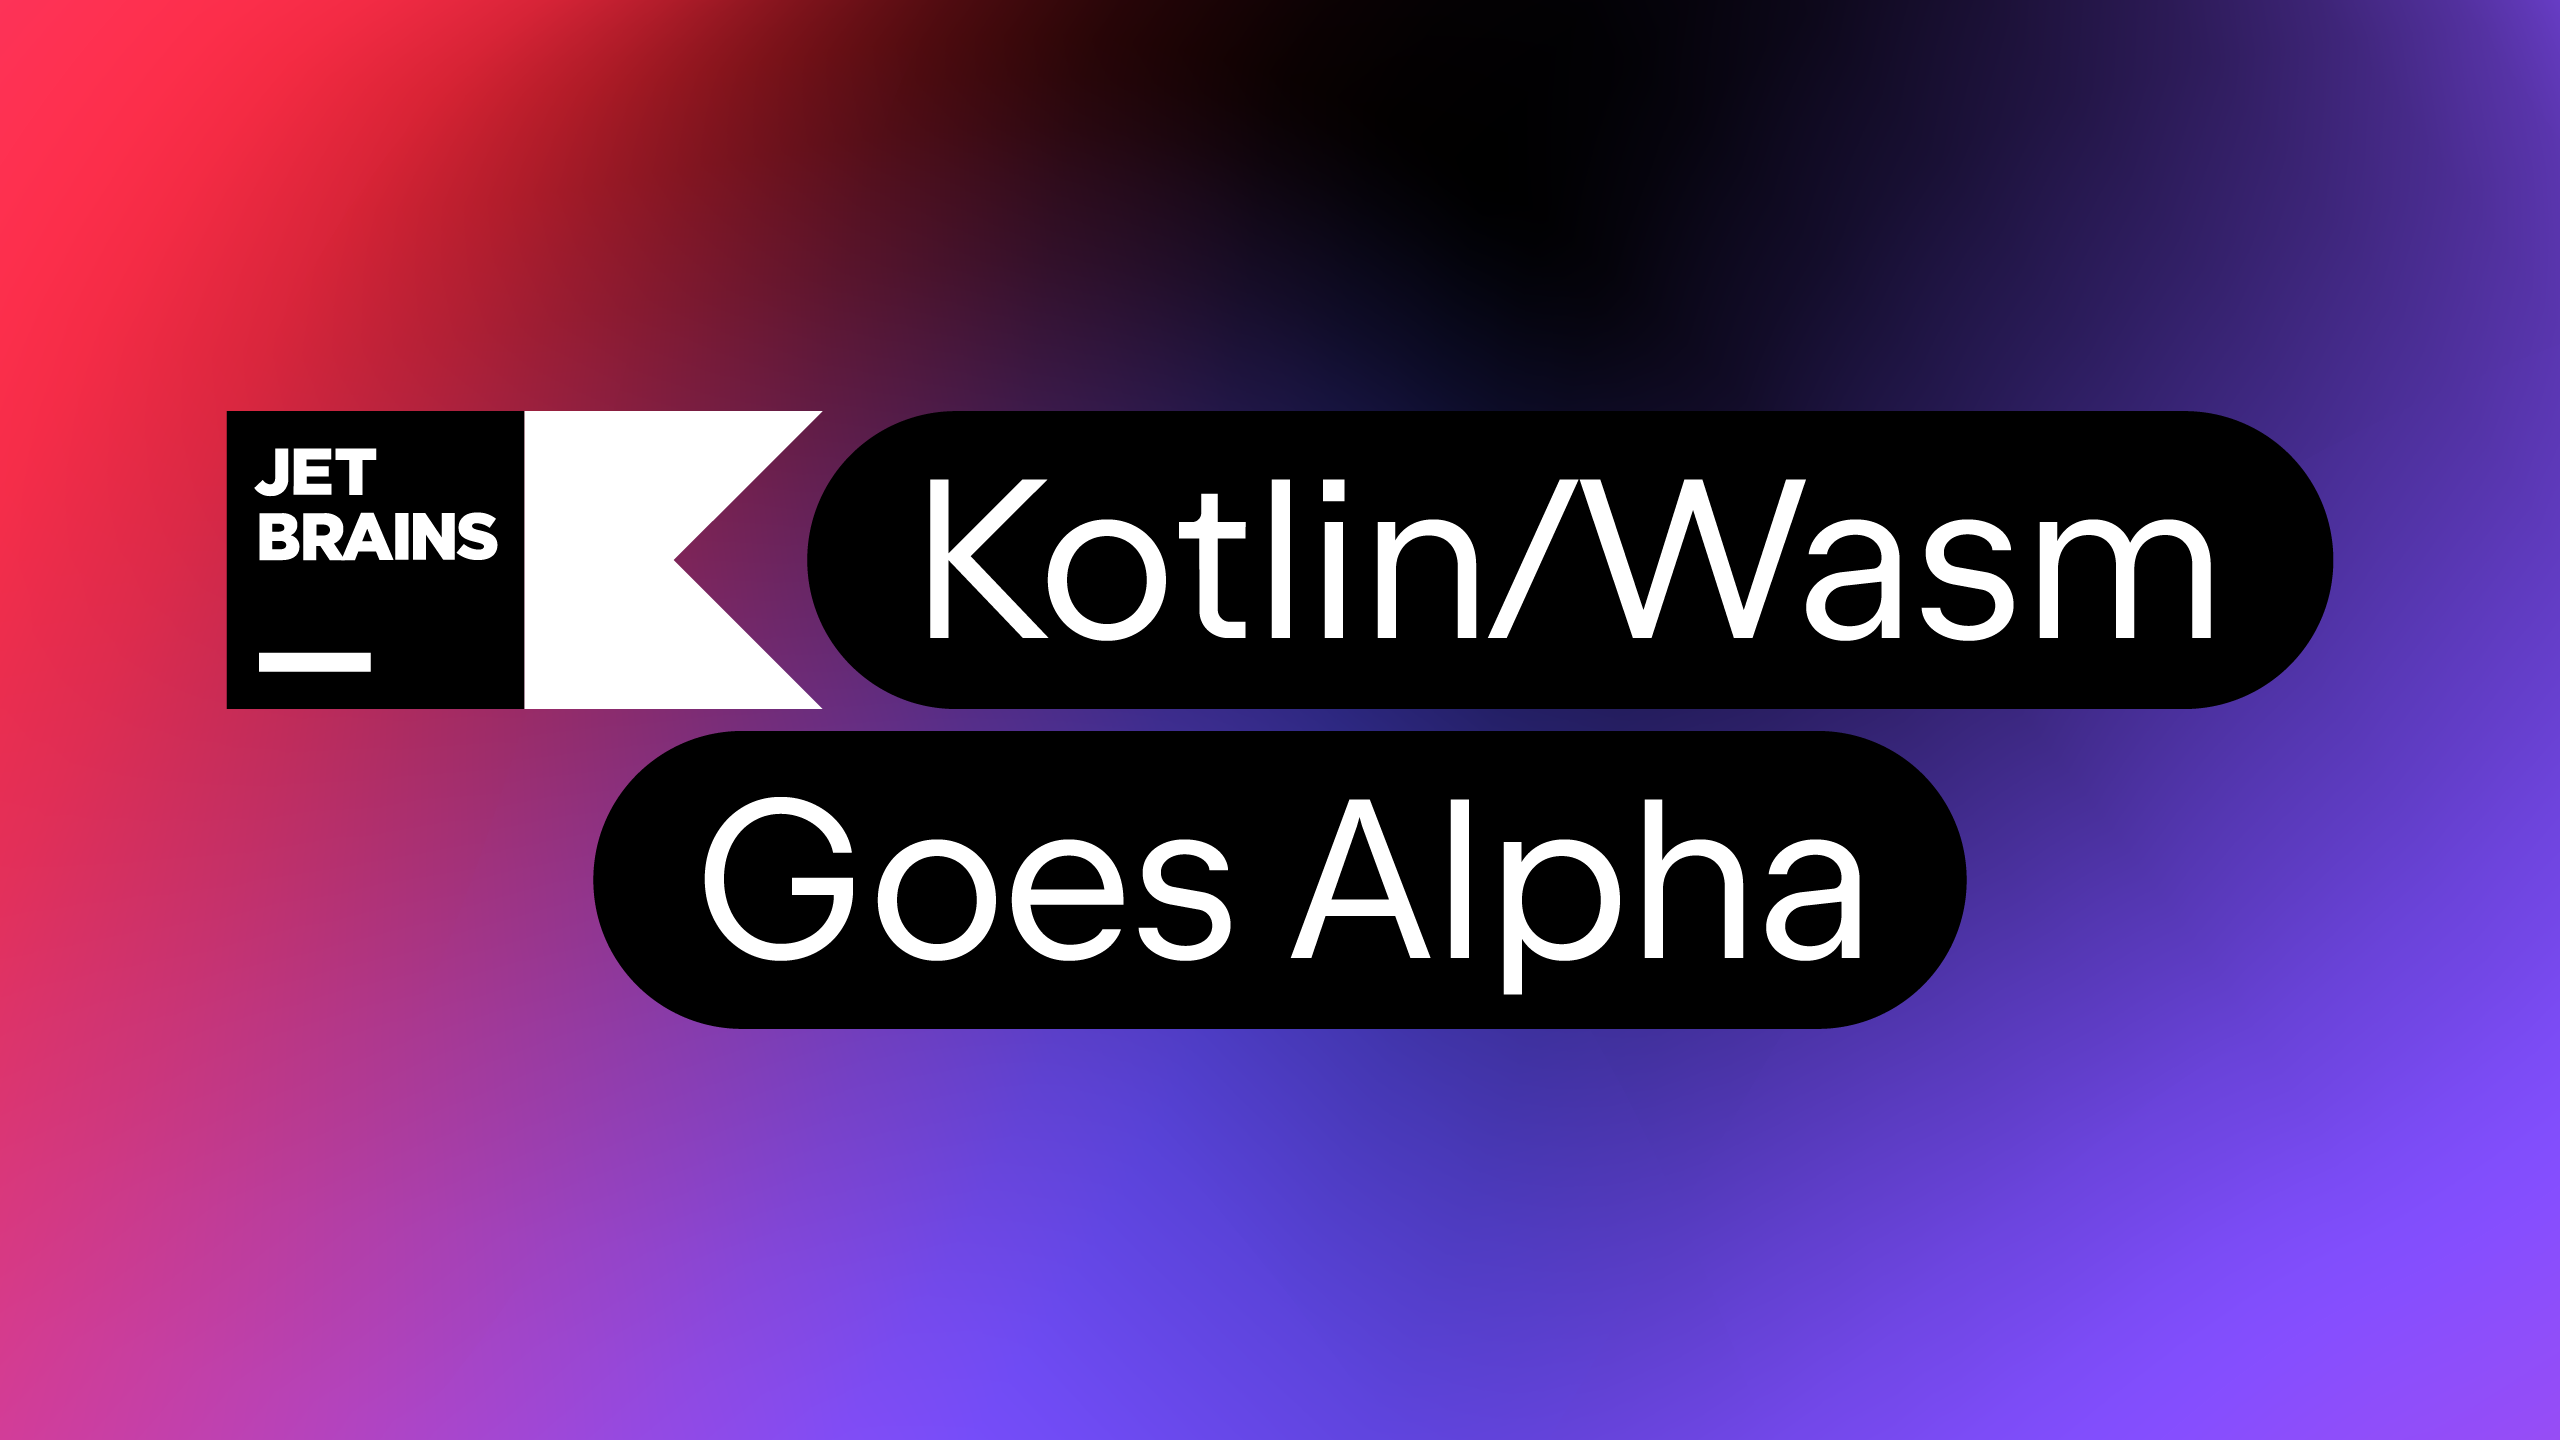 Kotlin/Wasm goes Alpha